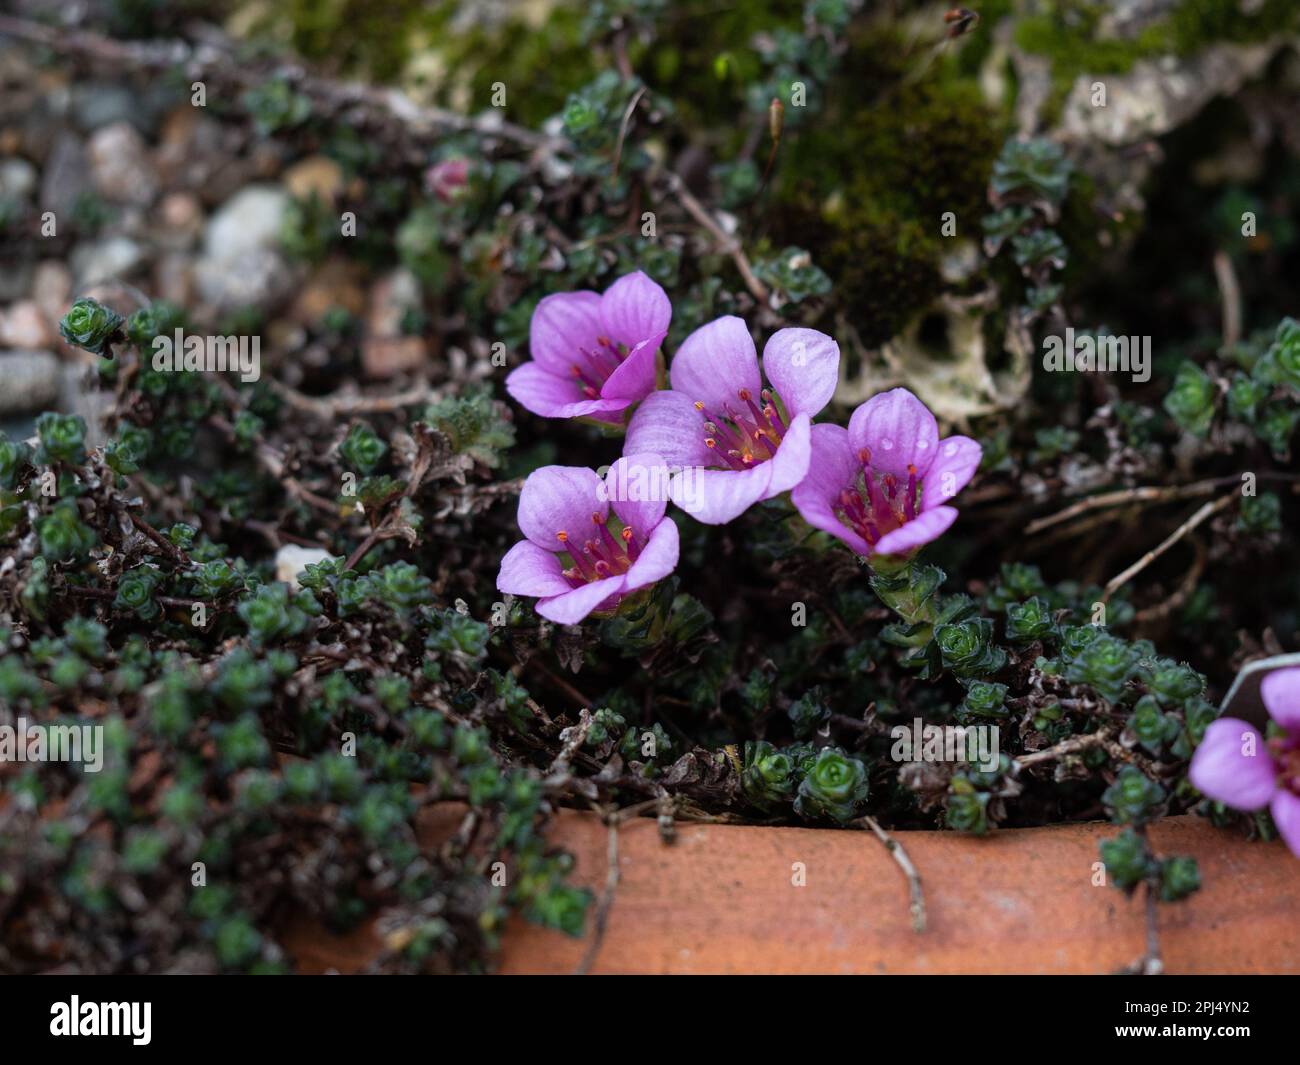 Die tiefrosa Frühlingsblume von Saxifraga oppositifolia "Latina" am Rand einer Terrakotta-Pfanne. Stockfoto